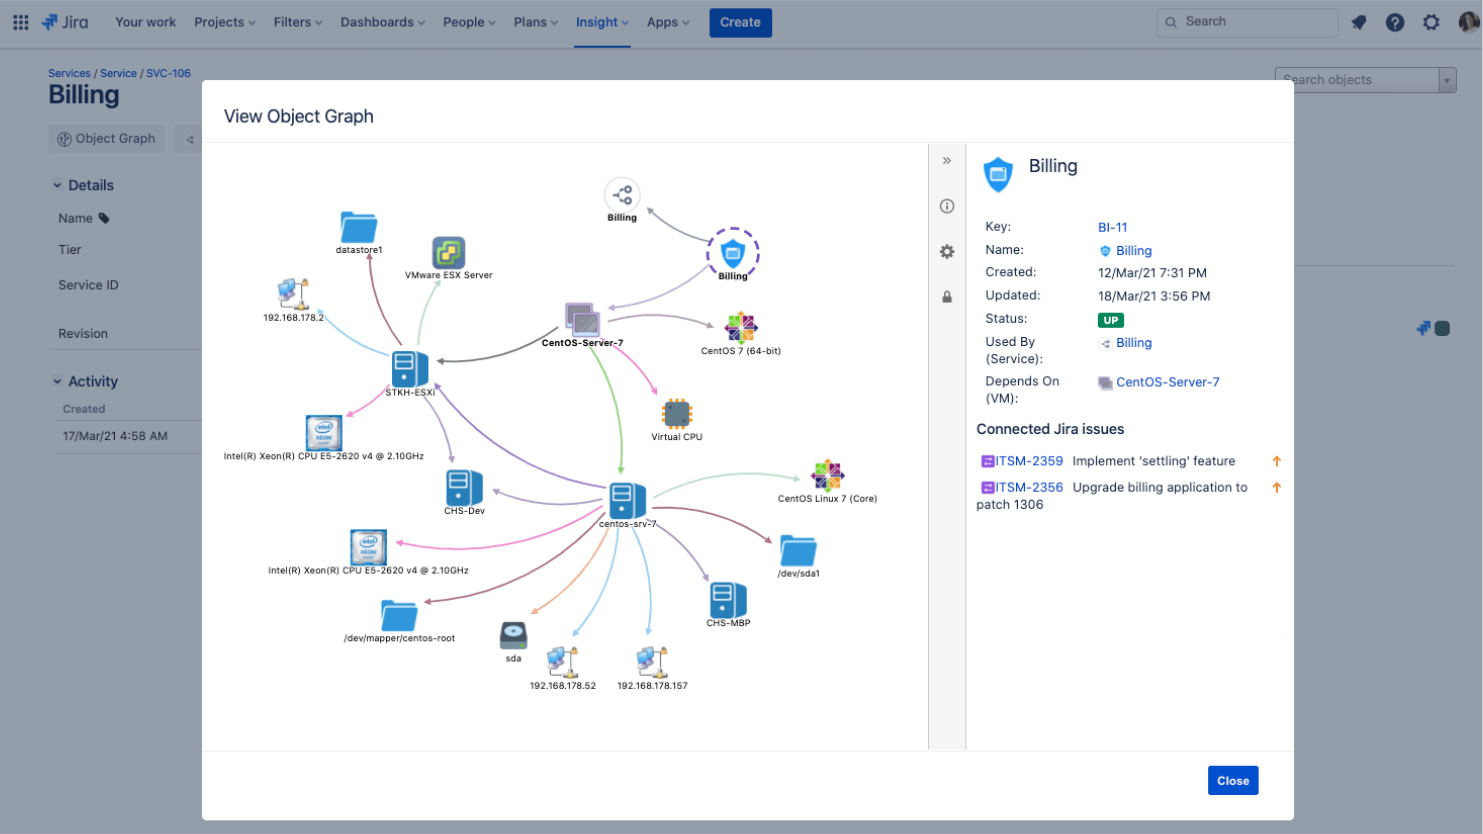 Captura de tela de um mapa de serviço que oferece uma visão geral da arquitetura do modelo de serviço